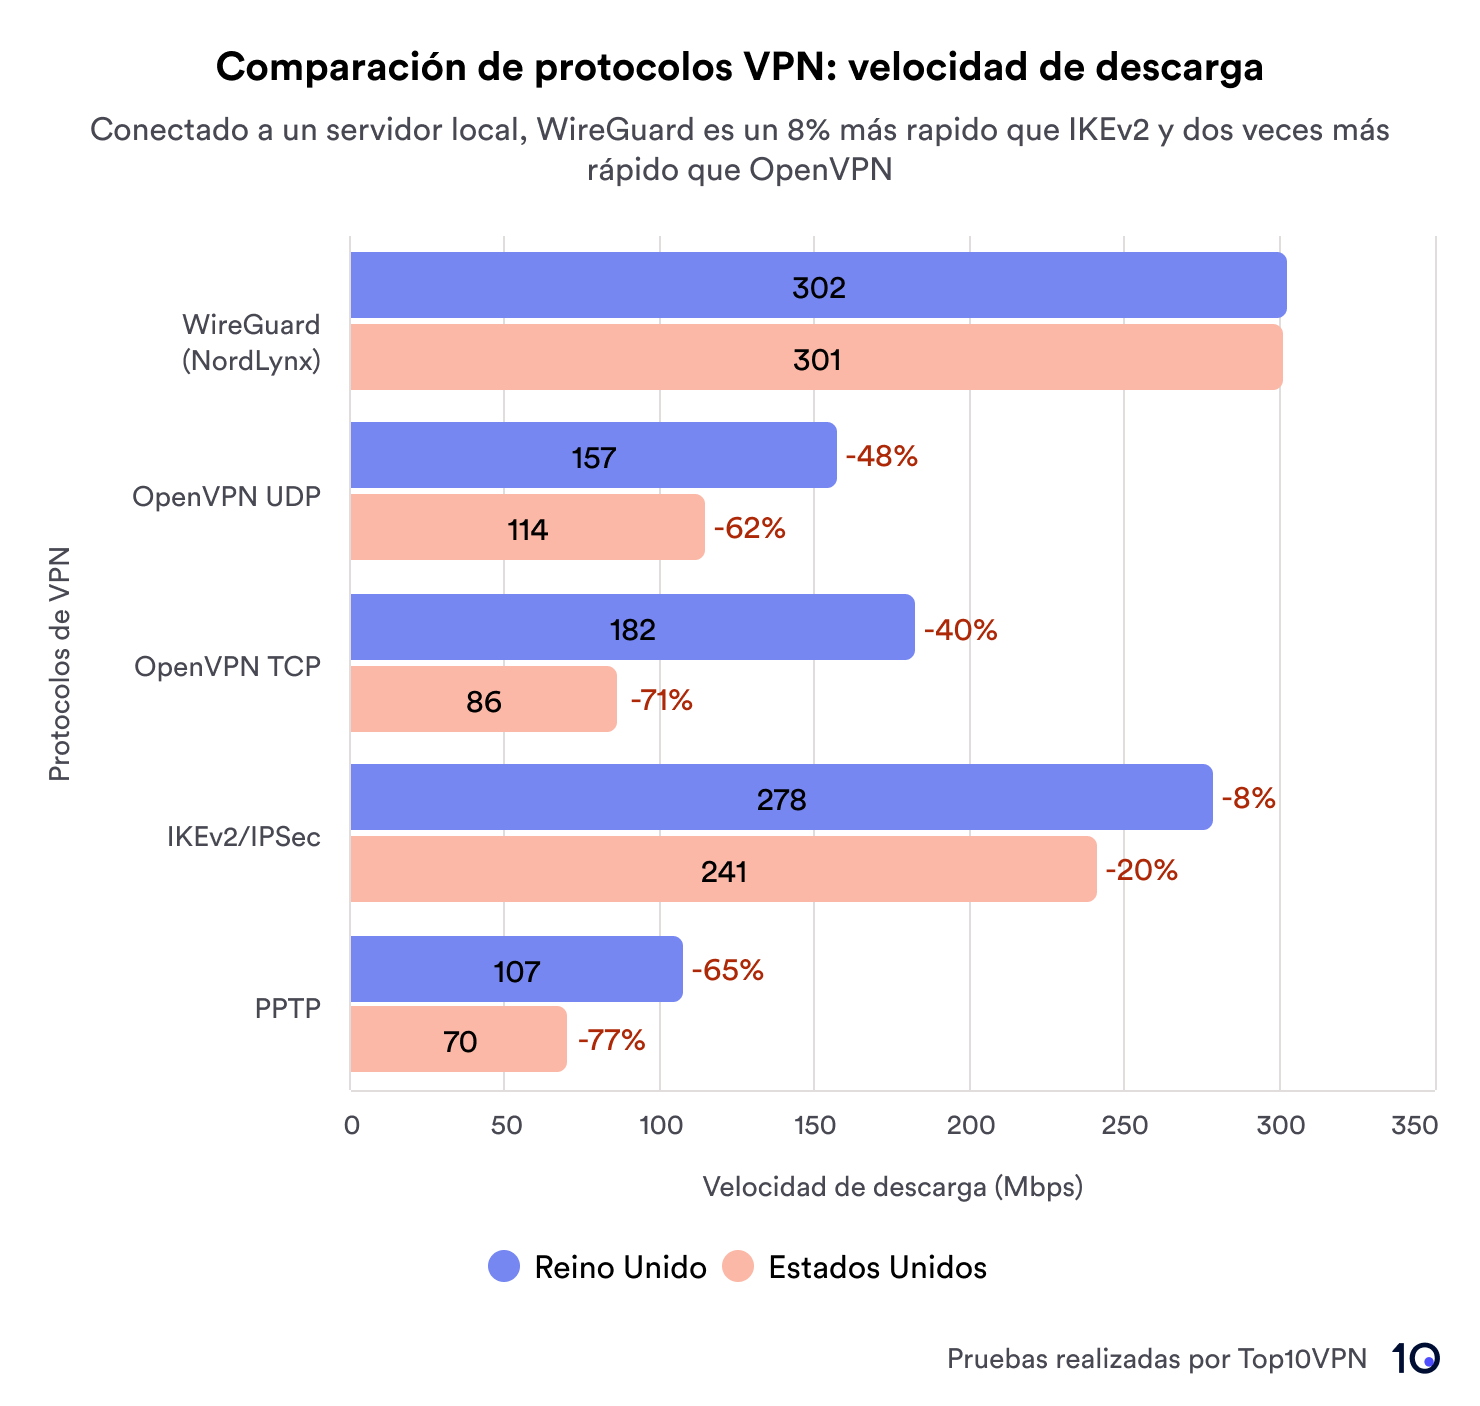 Comparación de protocolos de VPN: velocidad de descarga